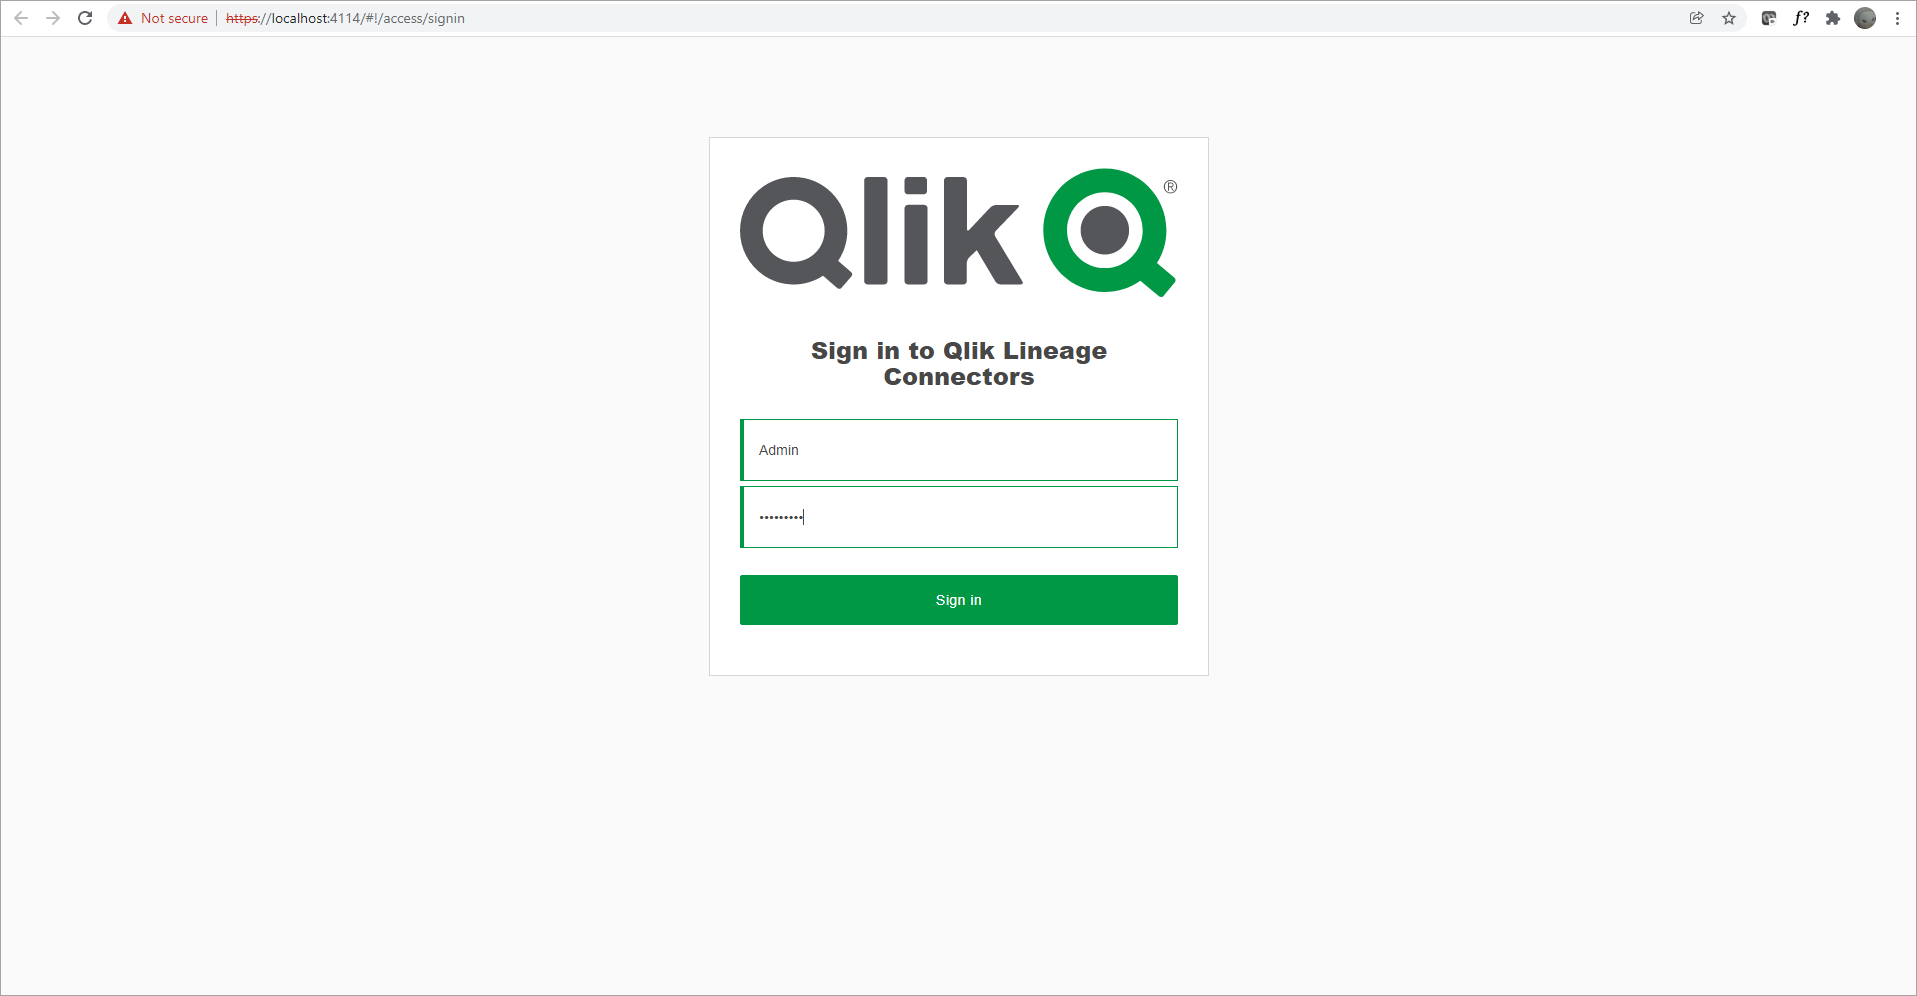 Вход на веб-странице Qlik Lineage Connectors с использованием учетных данных администратора